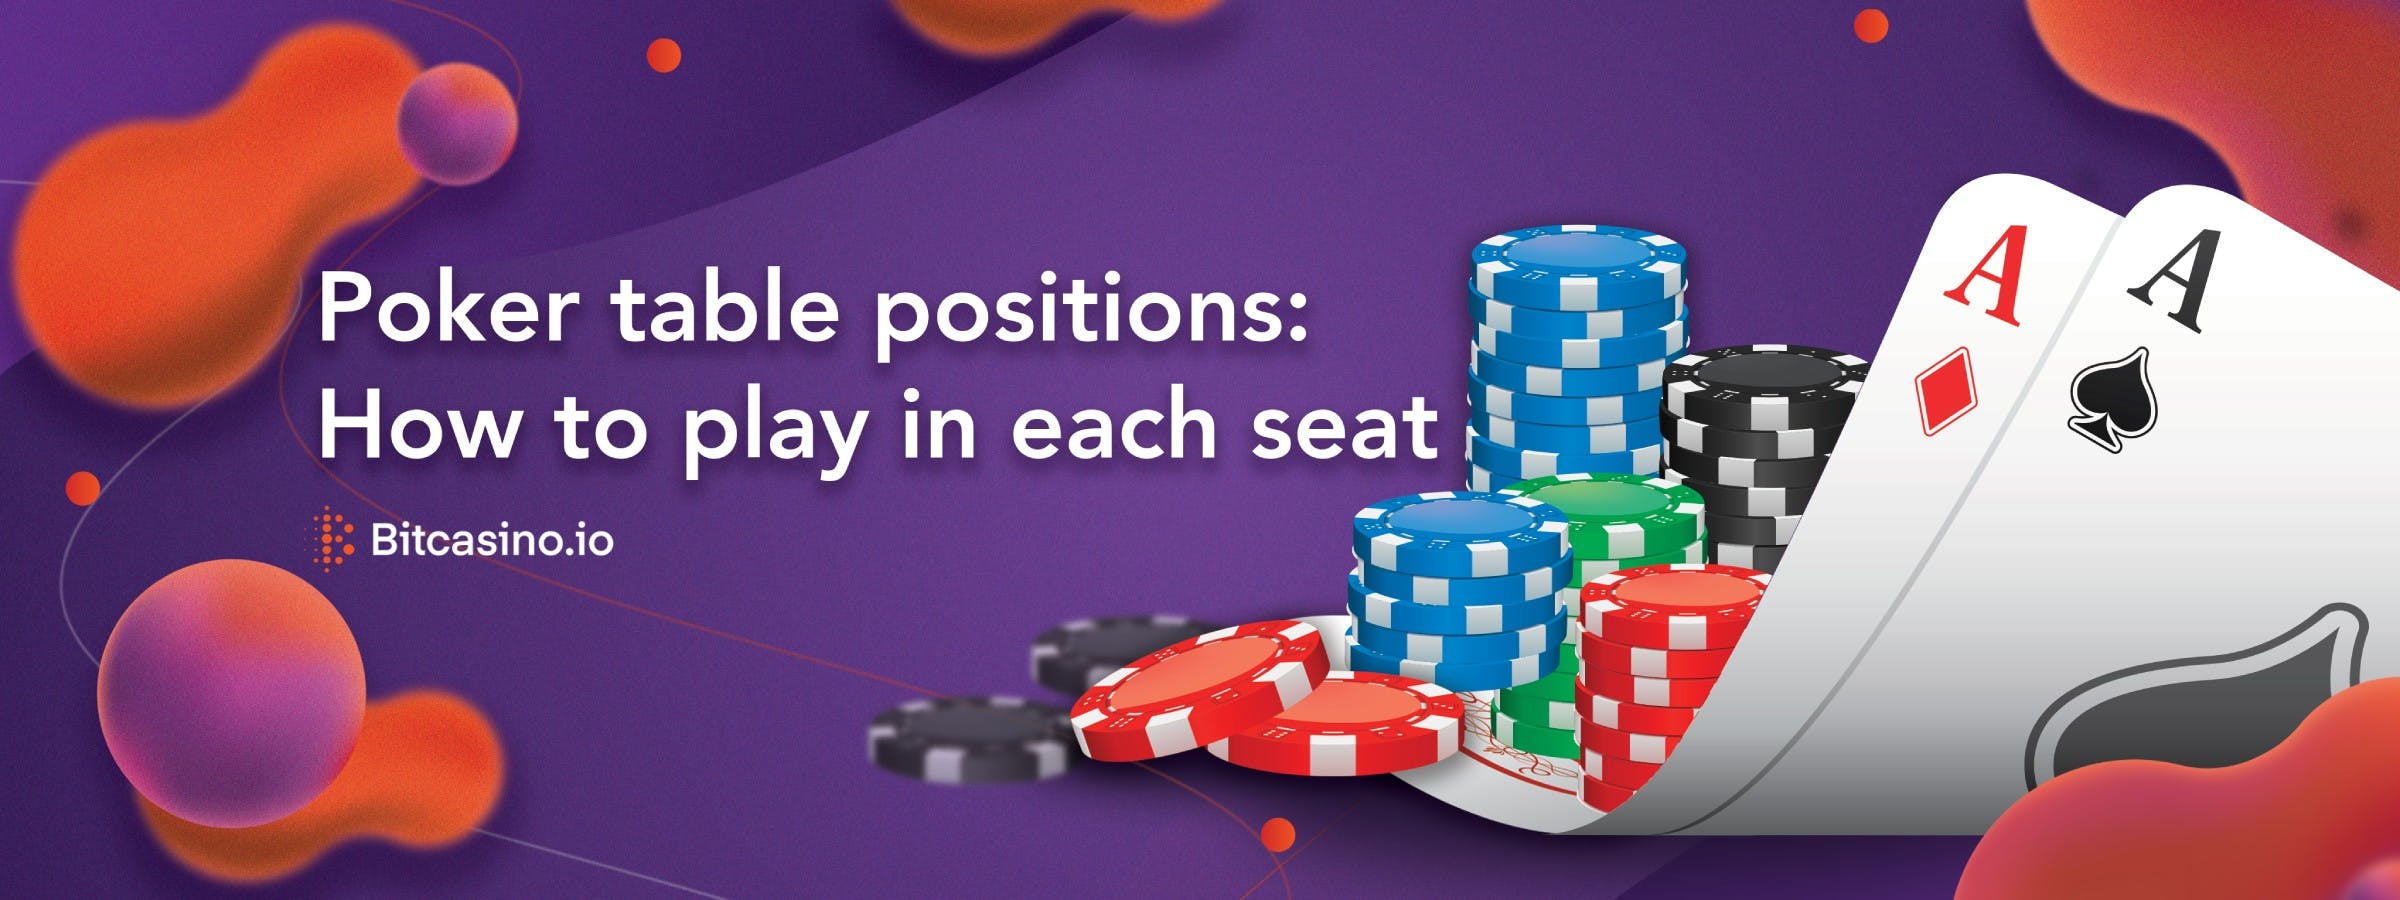 Posiciones de la mesa de póker: Cómo jugar en cada asiento